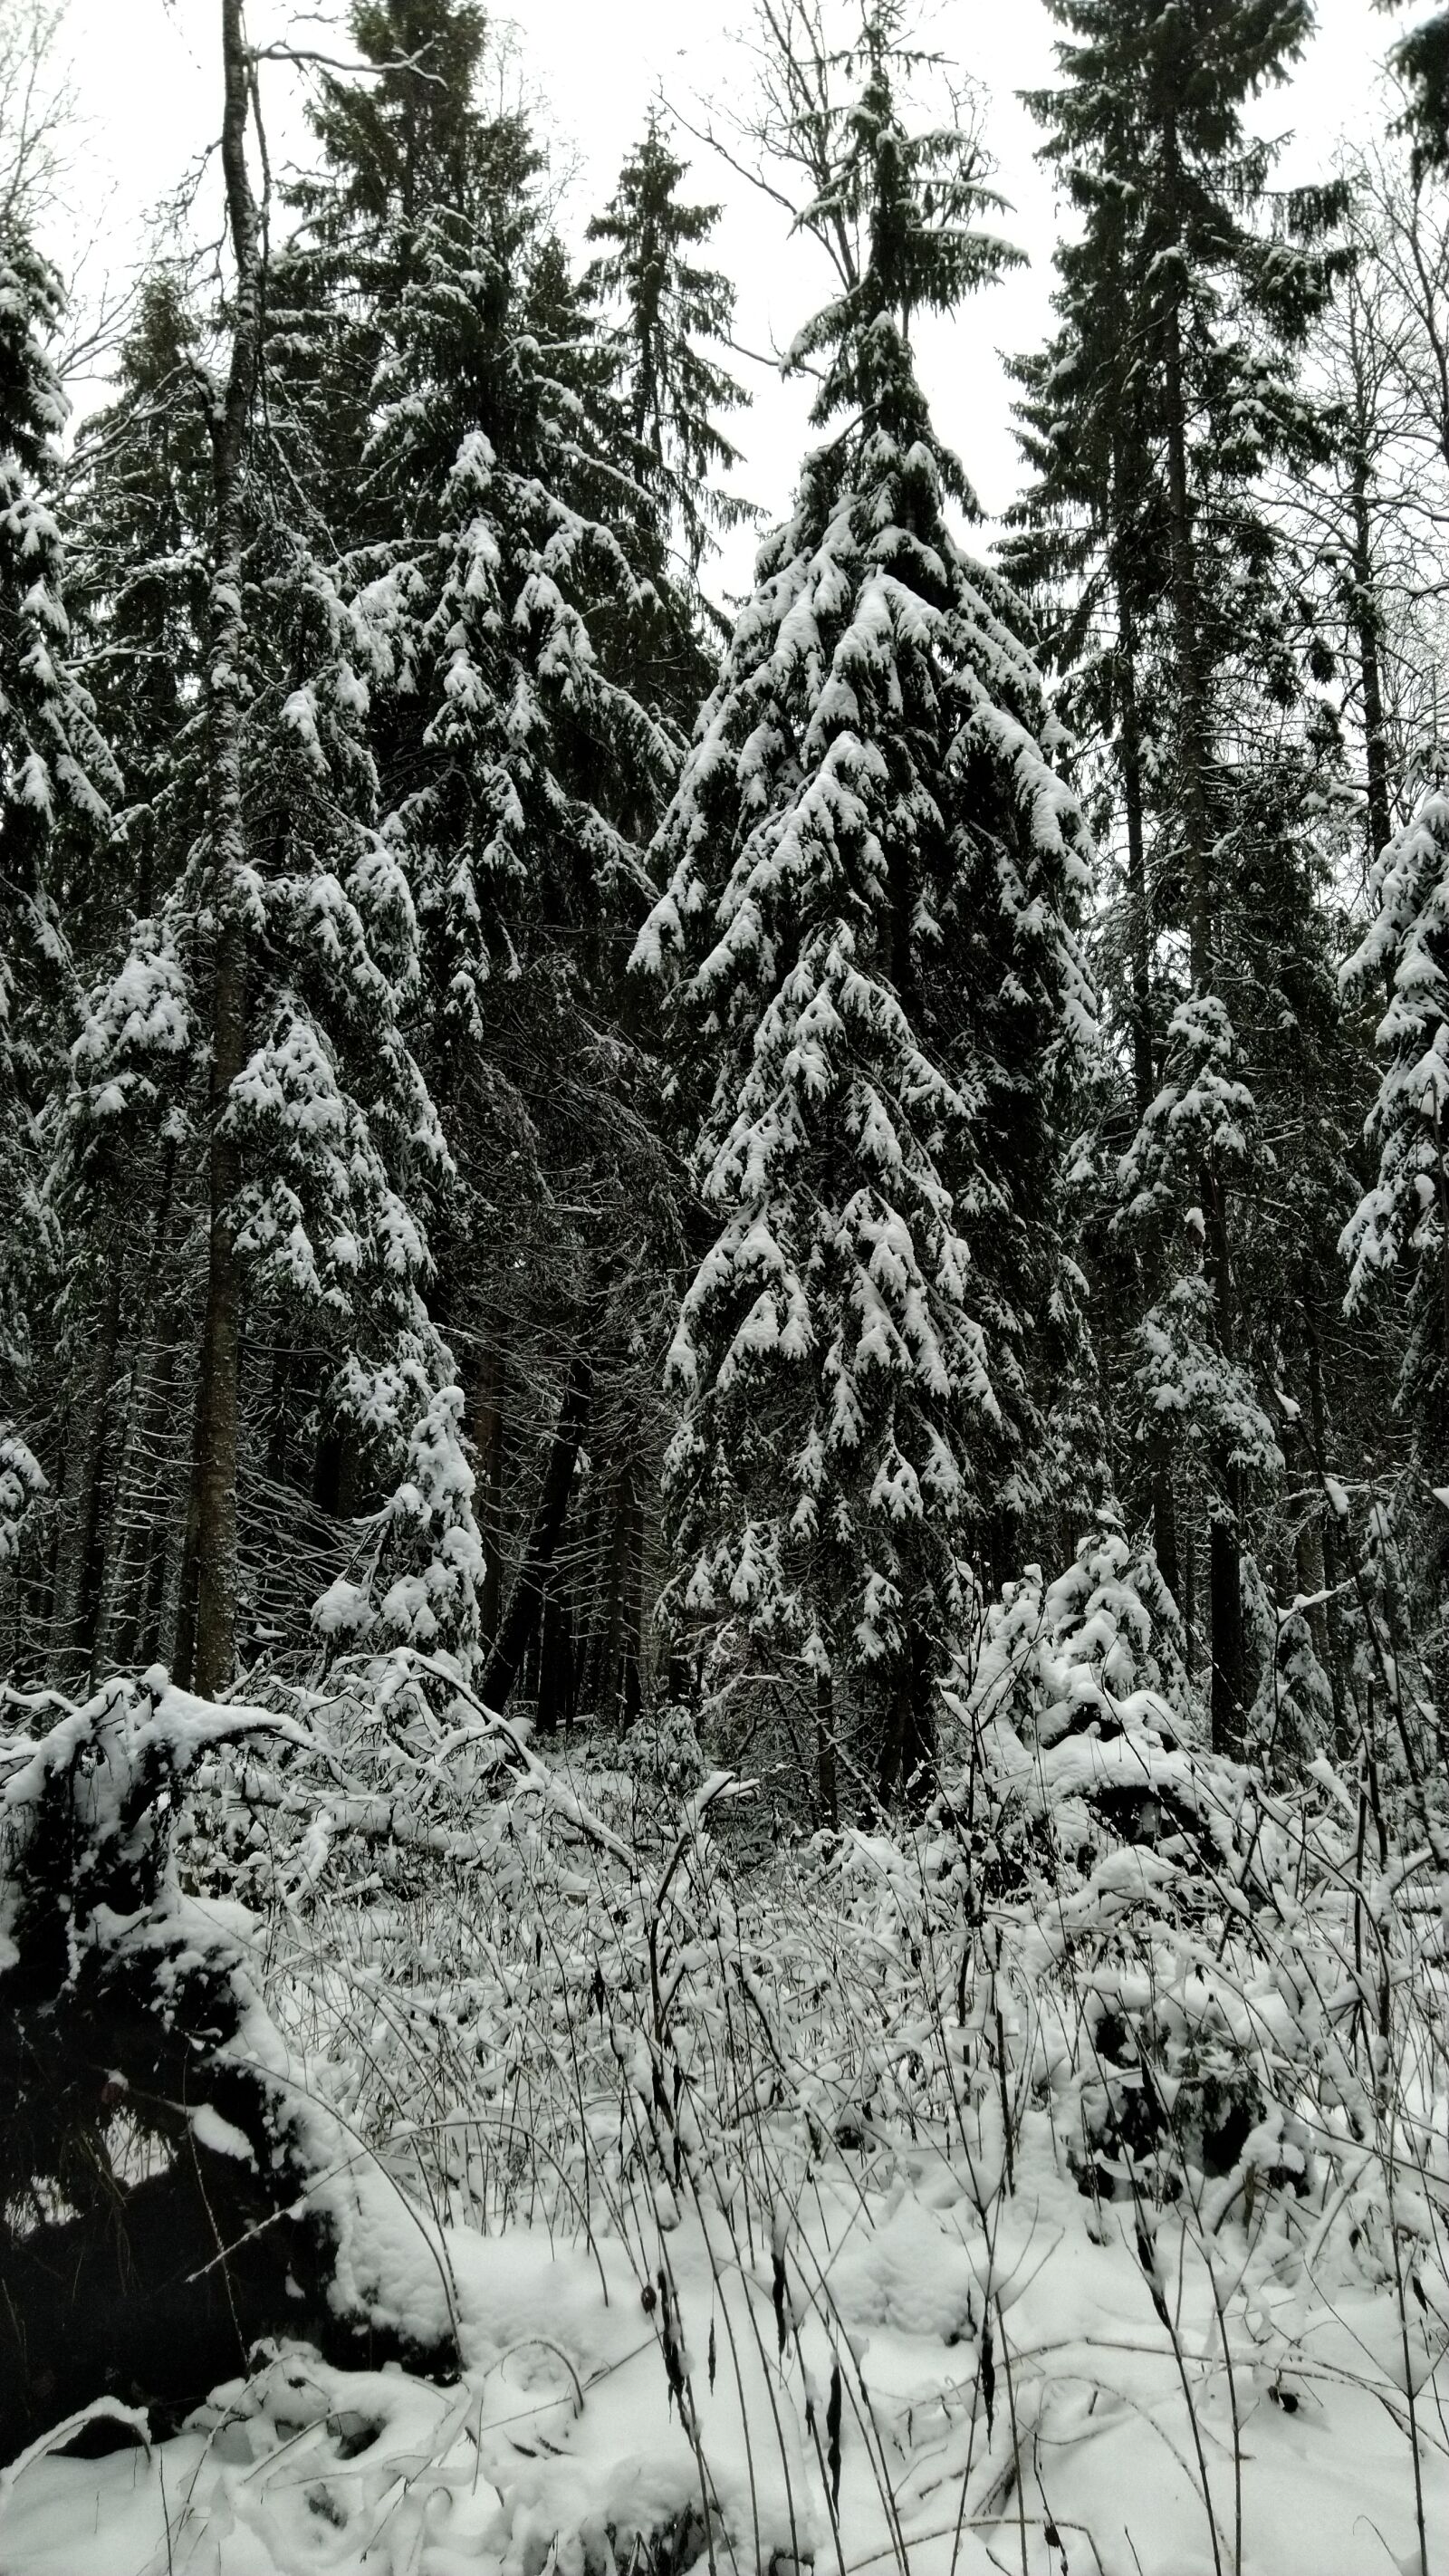 ASUS ZenFone 5 Lite (ZC600KL) sample photo. Forest, nature, landscape photography